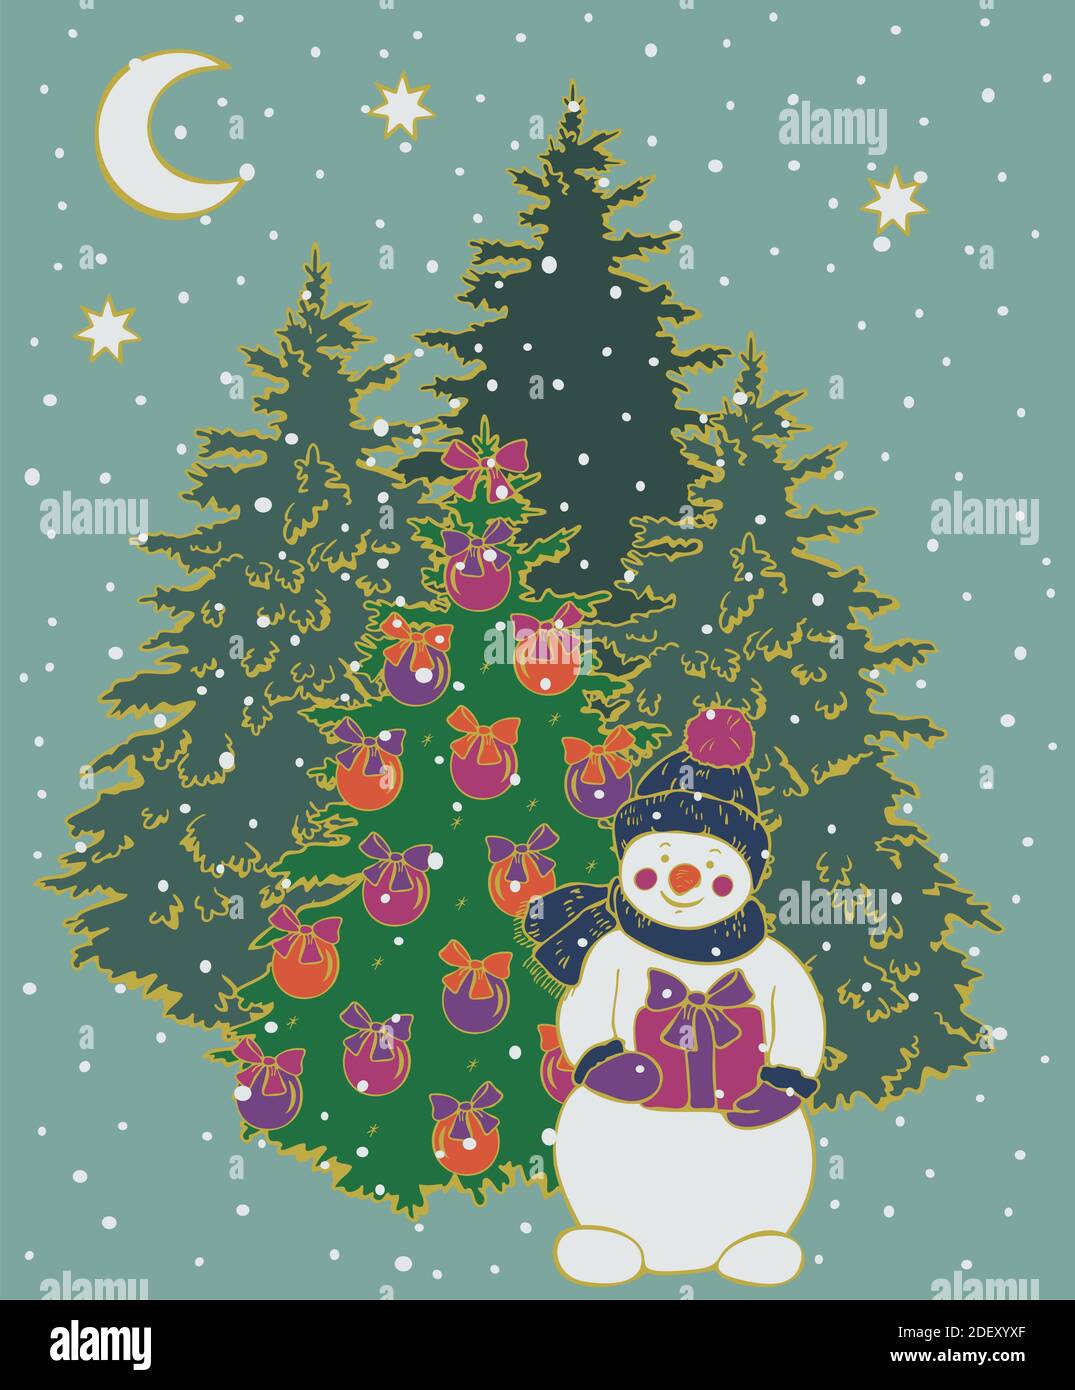 Vektor-Illustration Postkarte Design geschmückt Weihnachtsbäume und Schneemann halten Geschenk. Weihnachtskarte im Retro-Vintage-Stil, Neujahr. Stock Vektor